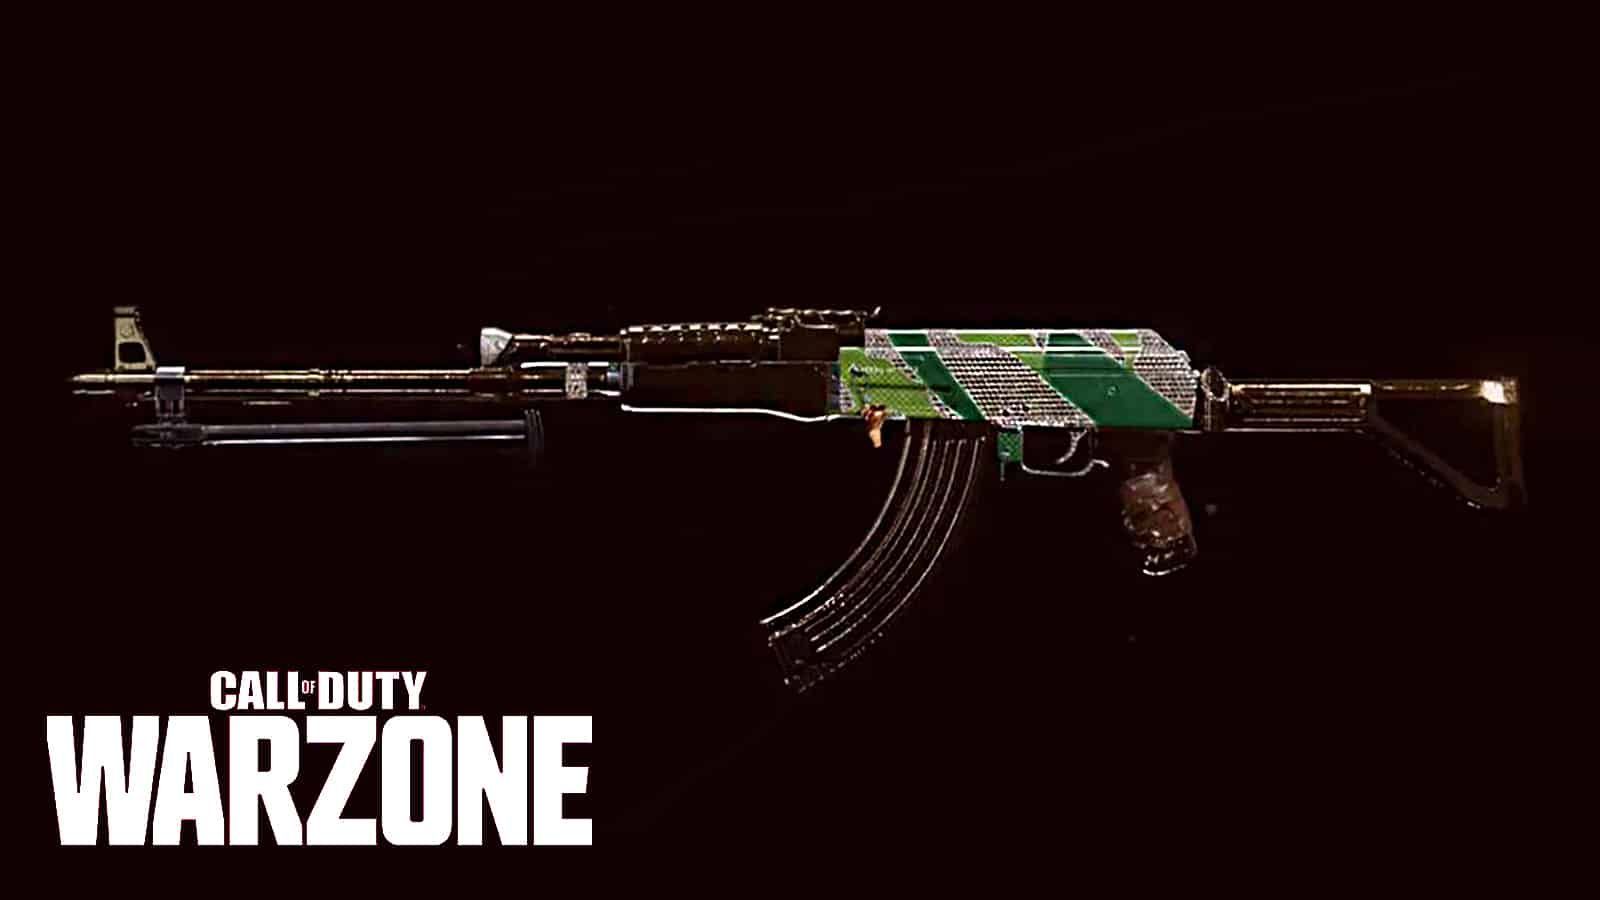 Cette classe de L'AK-47 dans Warzone risque de changer la méta - Dexerto.fr